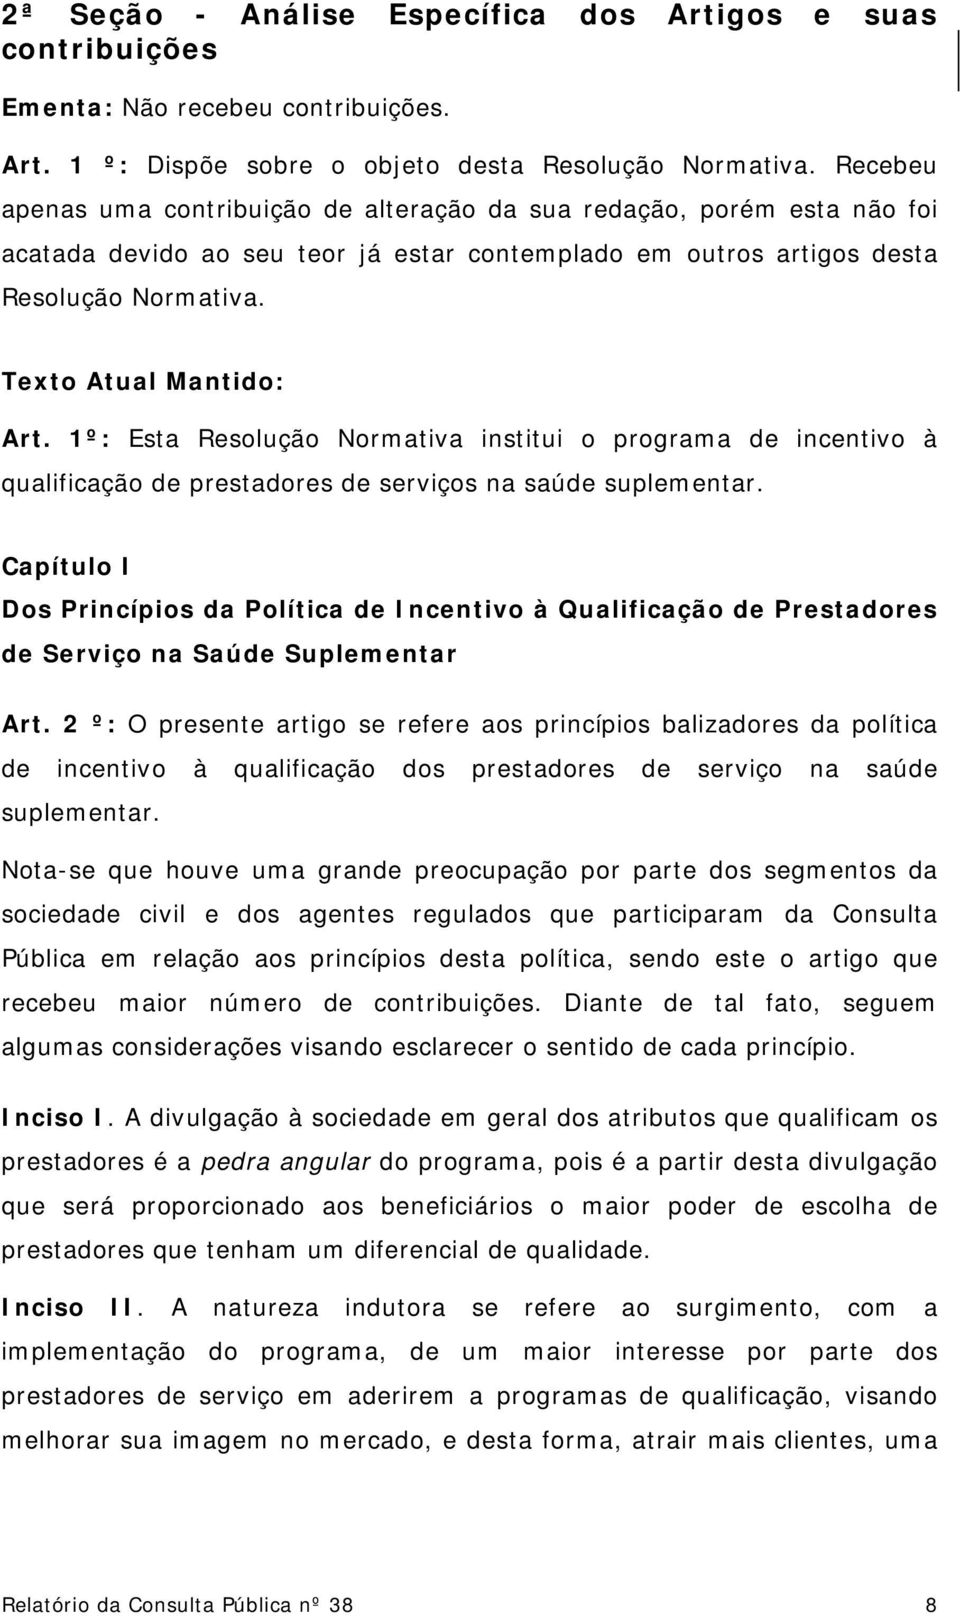 1º: Esta Resolução Normativa institui o programa de incentivo à qualificação de prestadores de serviços na saúde suplementar.